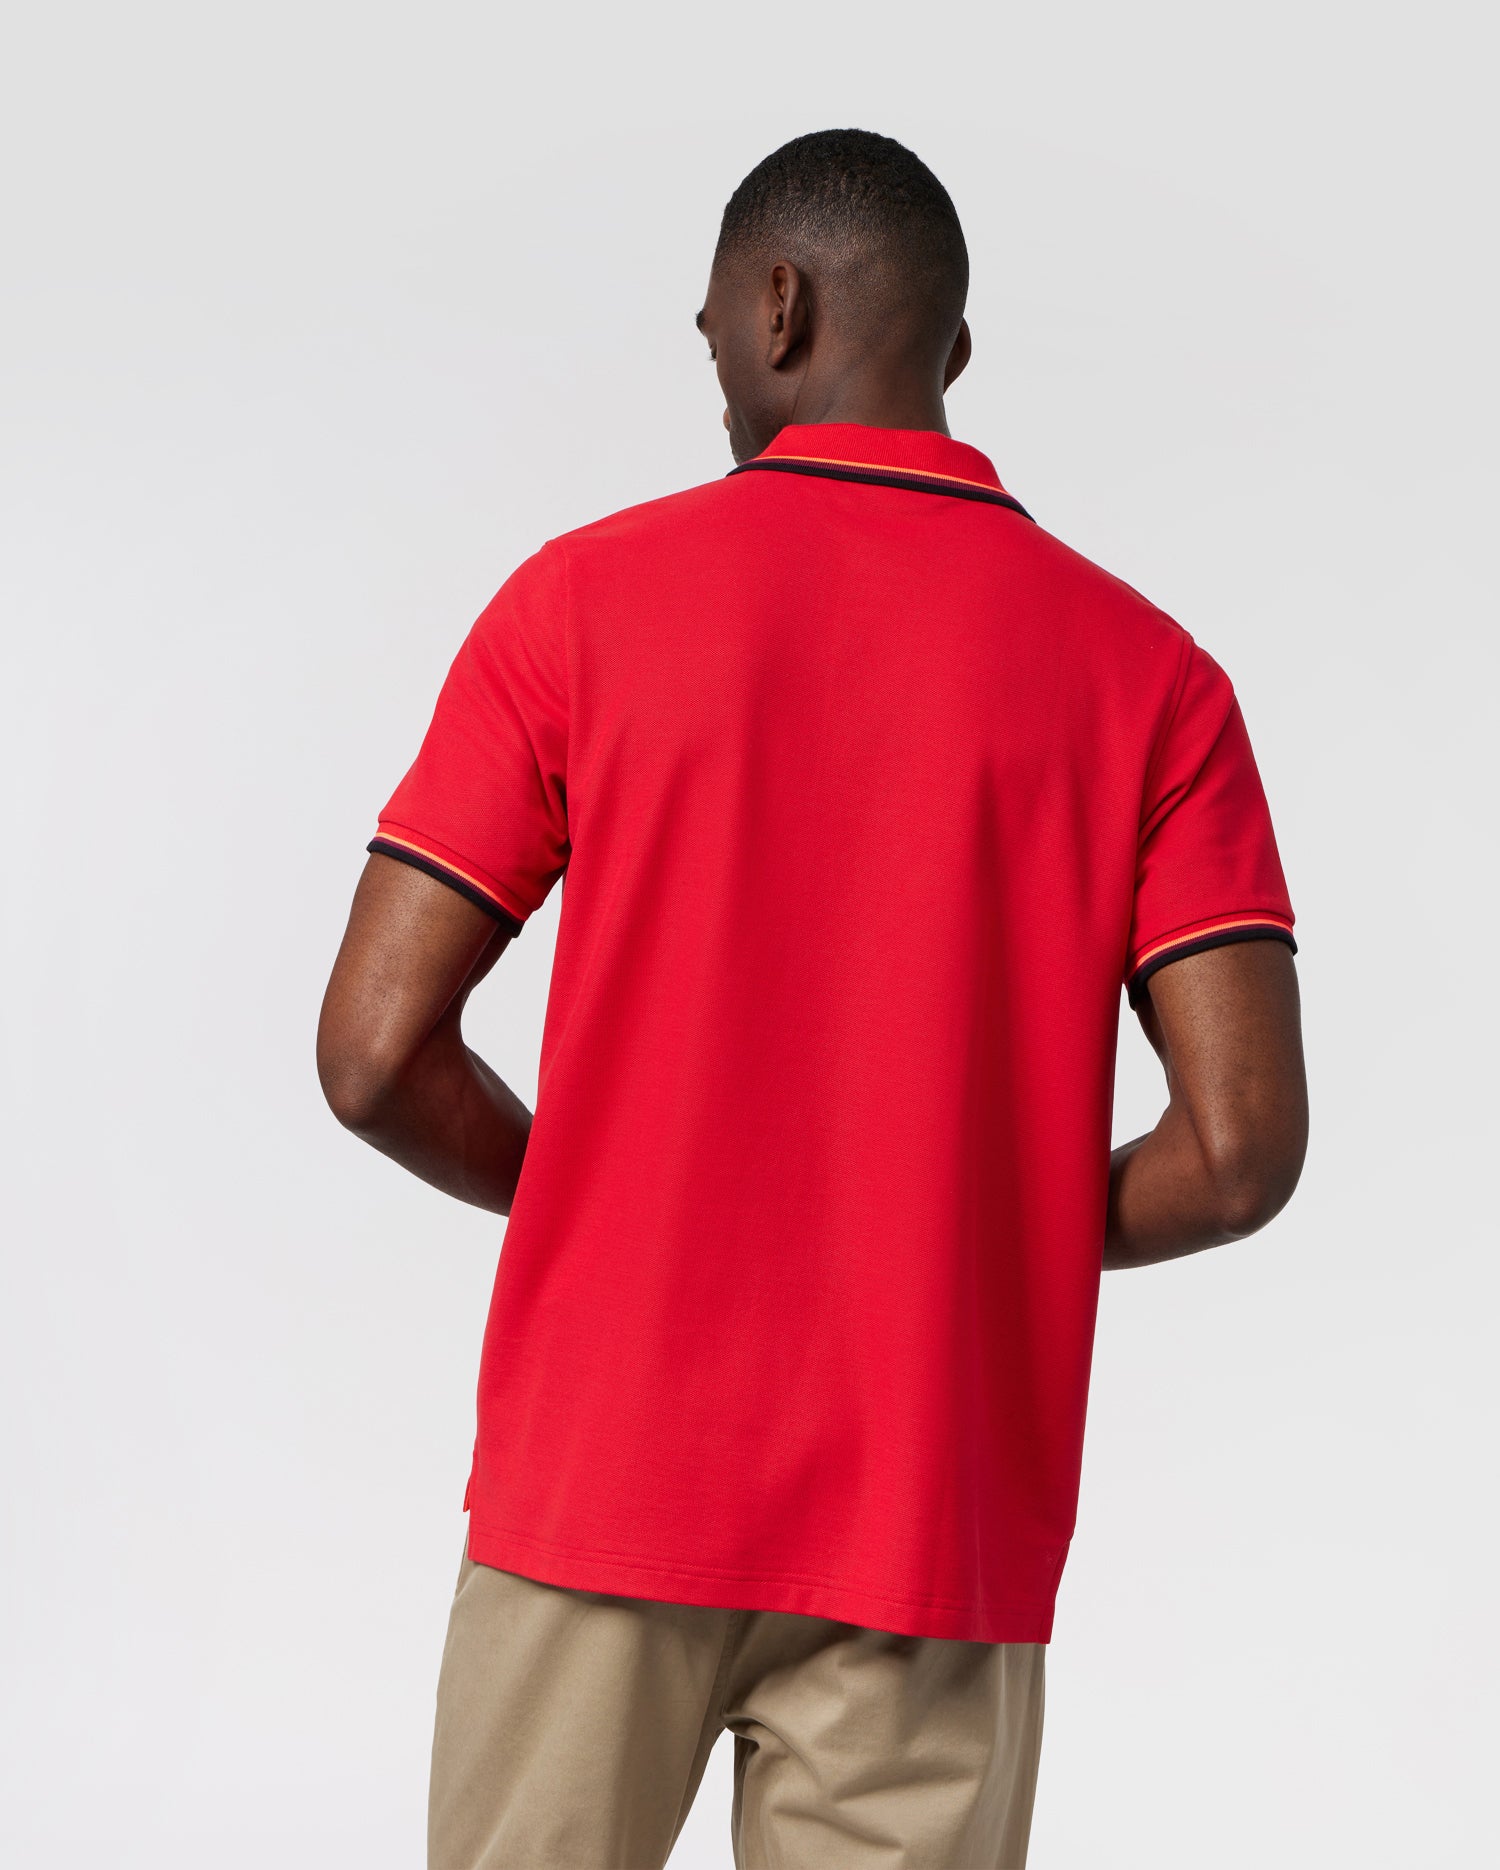 (M) Lacoste Men's Beige Polo Shirt